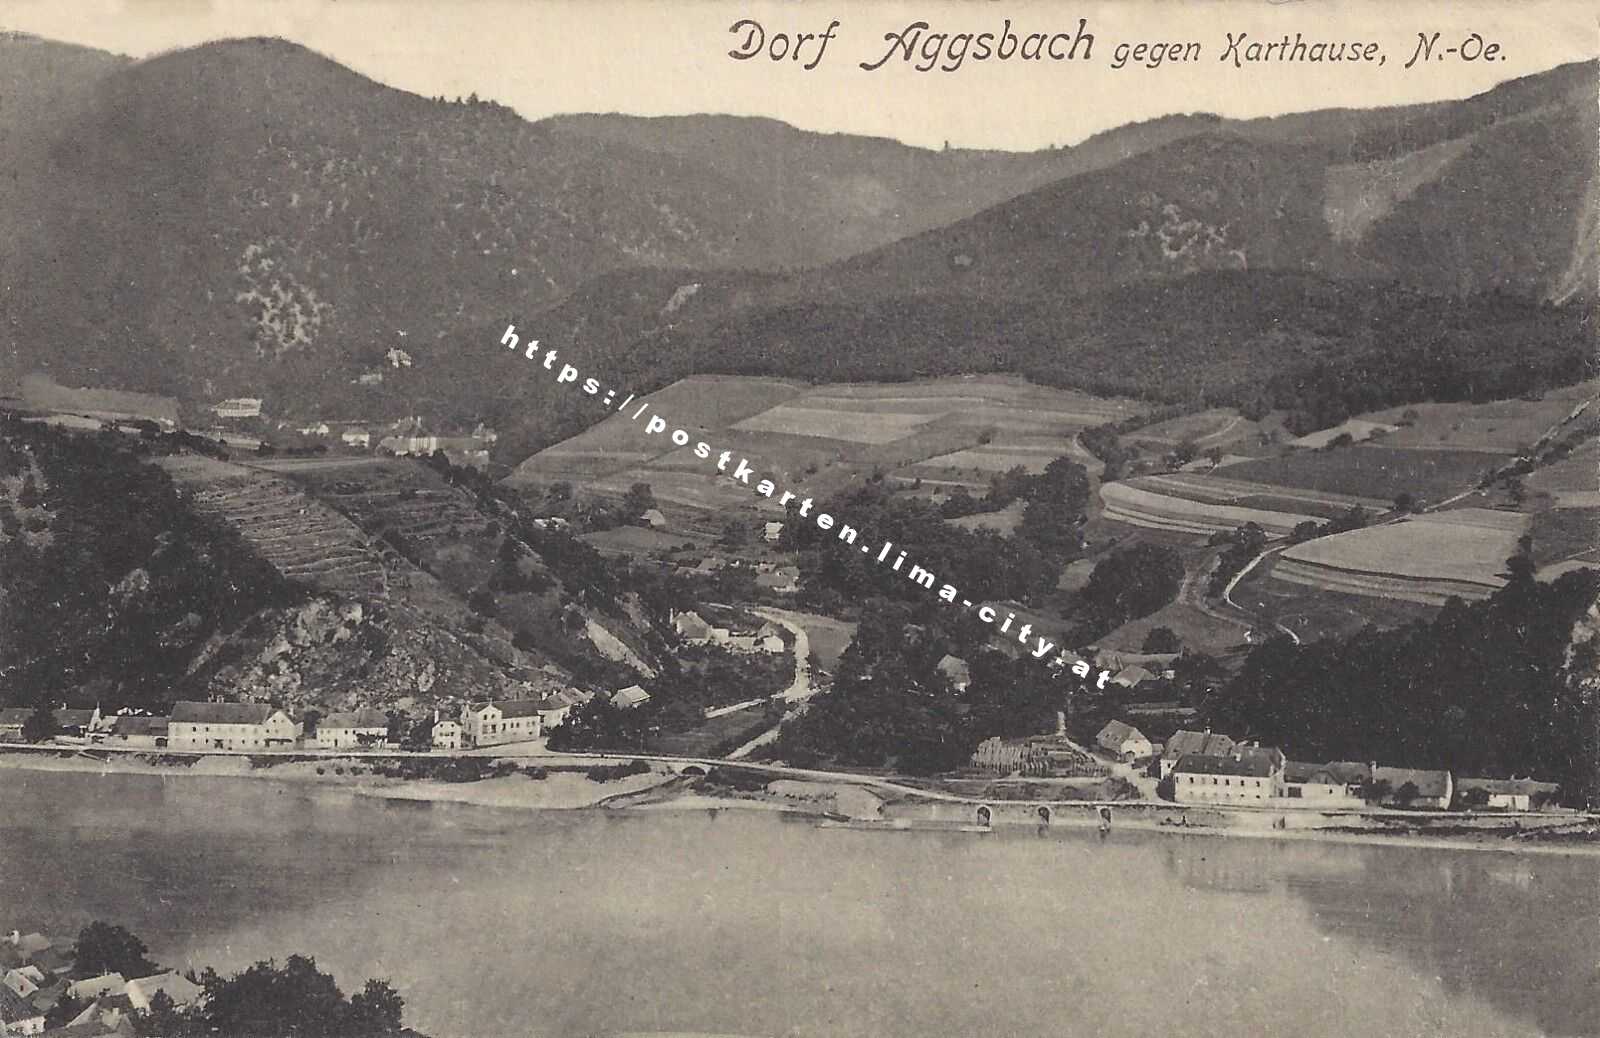 Aggsbach Dorf gegen Kartause 1918